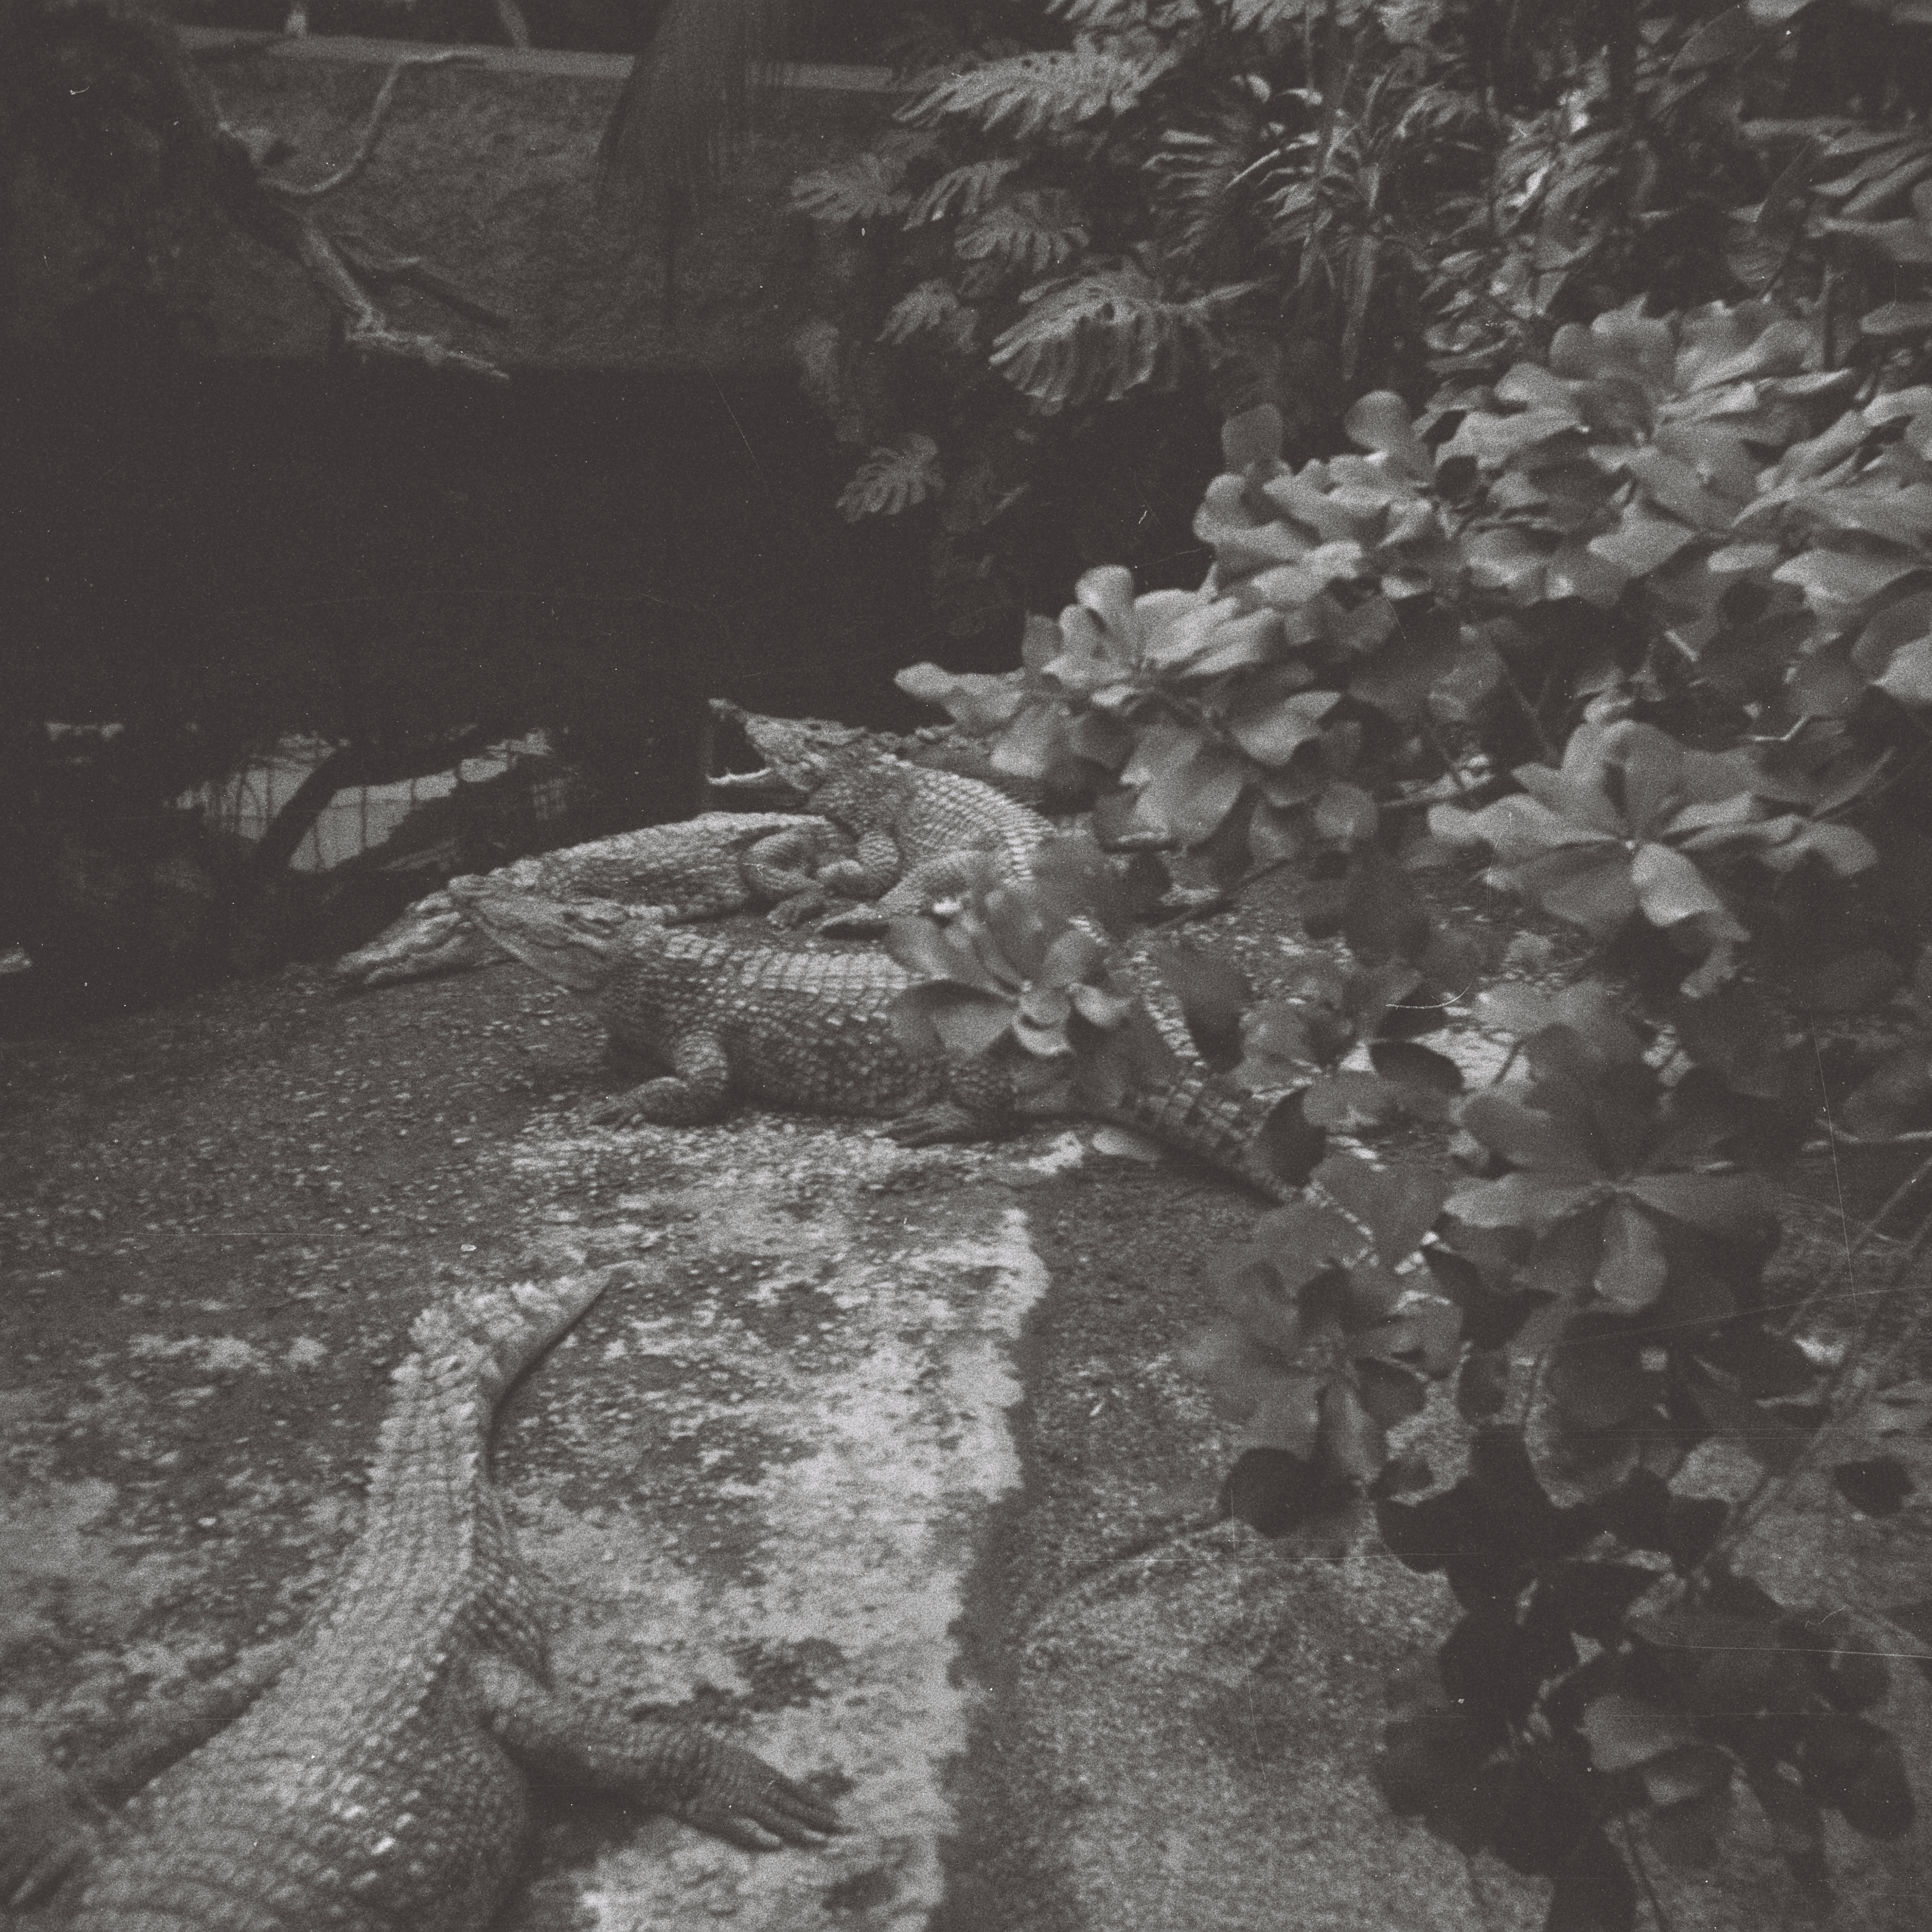 Photo: Blick von der Fußgängerbrücke in dem Aquaterrarium im Zoo-Aquarium aus hinunter zu den Krokodilen. In Berlin(West). Im Jahr 1967. Photograph: Erwin Thomasius.